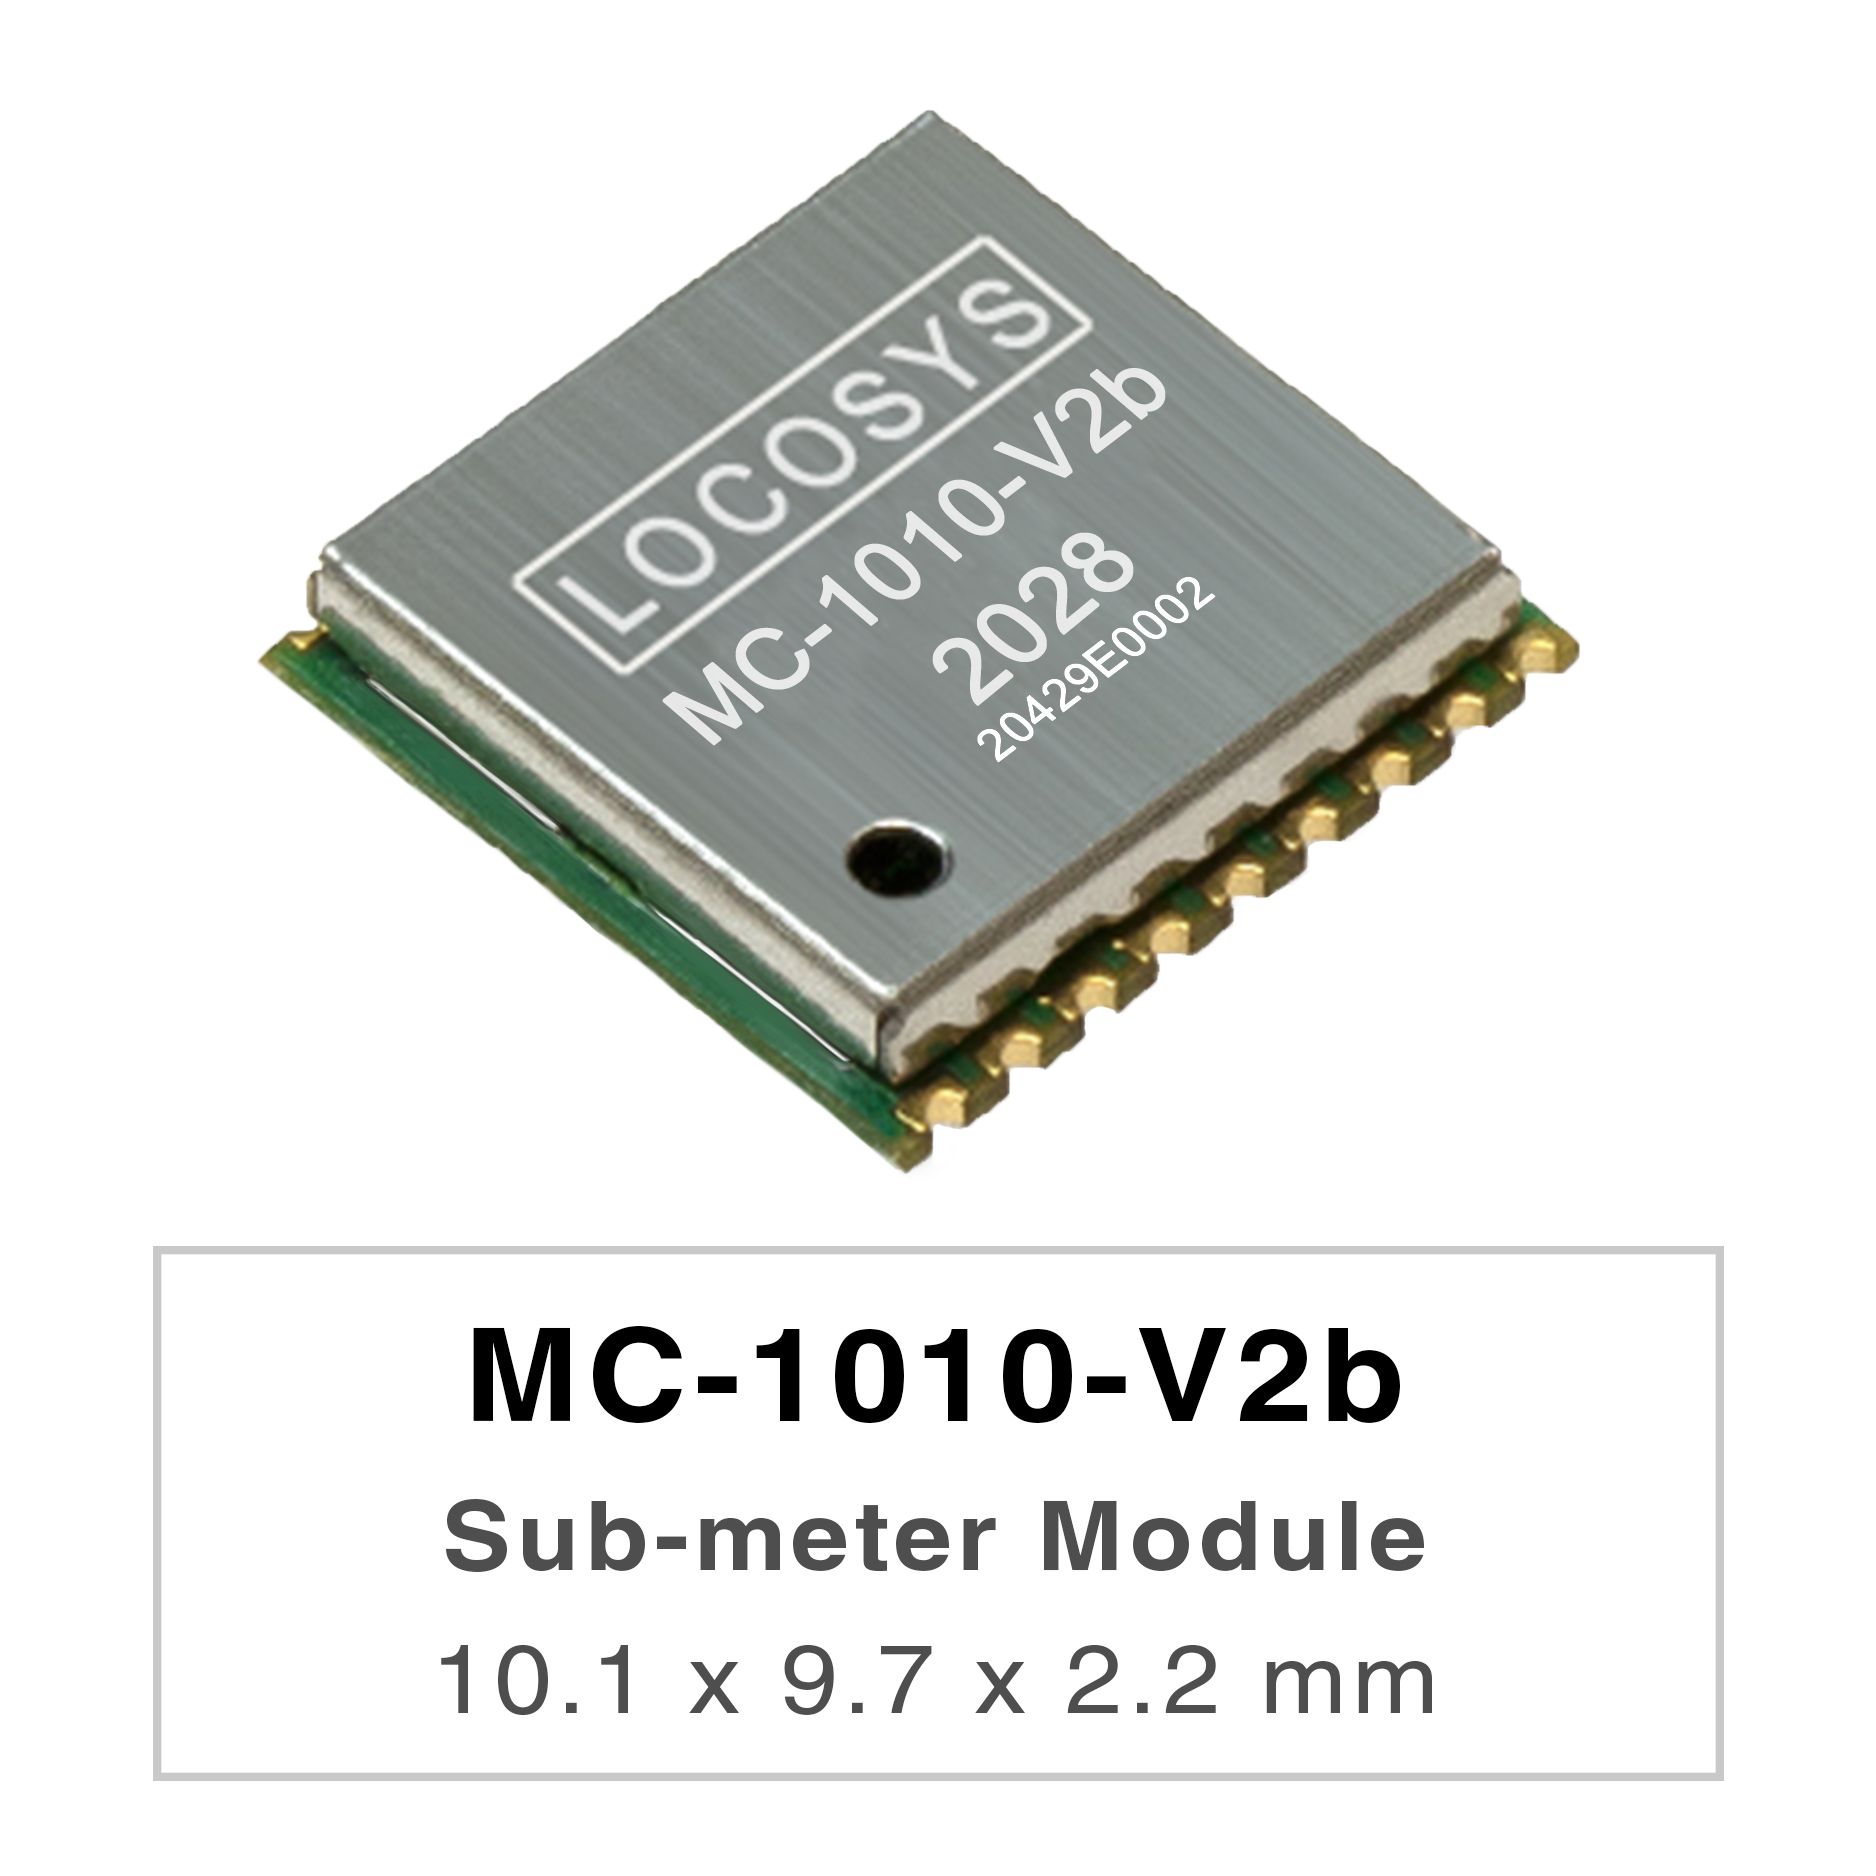 La serie LOCOSYS MC-1010-Vxx son módulos de posicionamiento GNSS de banda dual de alto rendimiento que son
<br />capaces de rastrear todos los sistemas de navegación civil globales. Adoptan un proceso de 12 nm e integran una
<br />arquitectura de administración de energía eficiente para funcionar con baja potencia y alta sensibilidad.